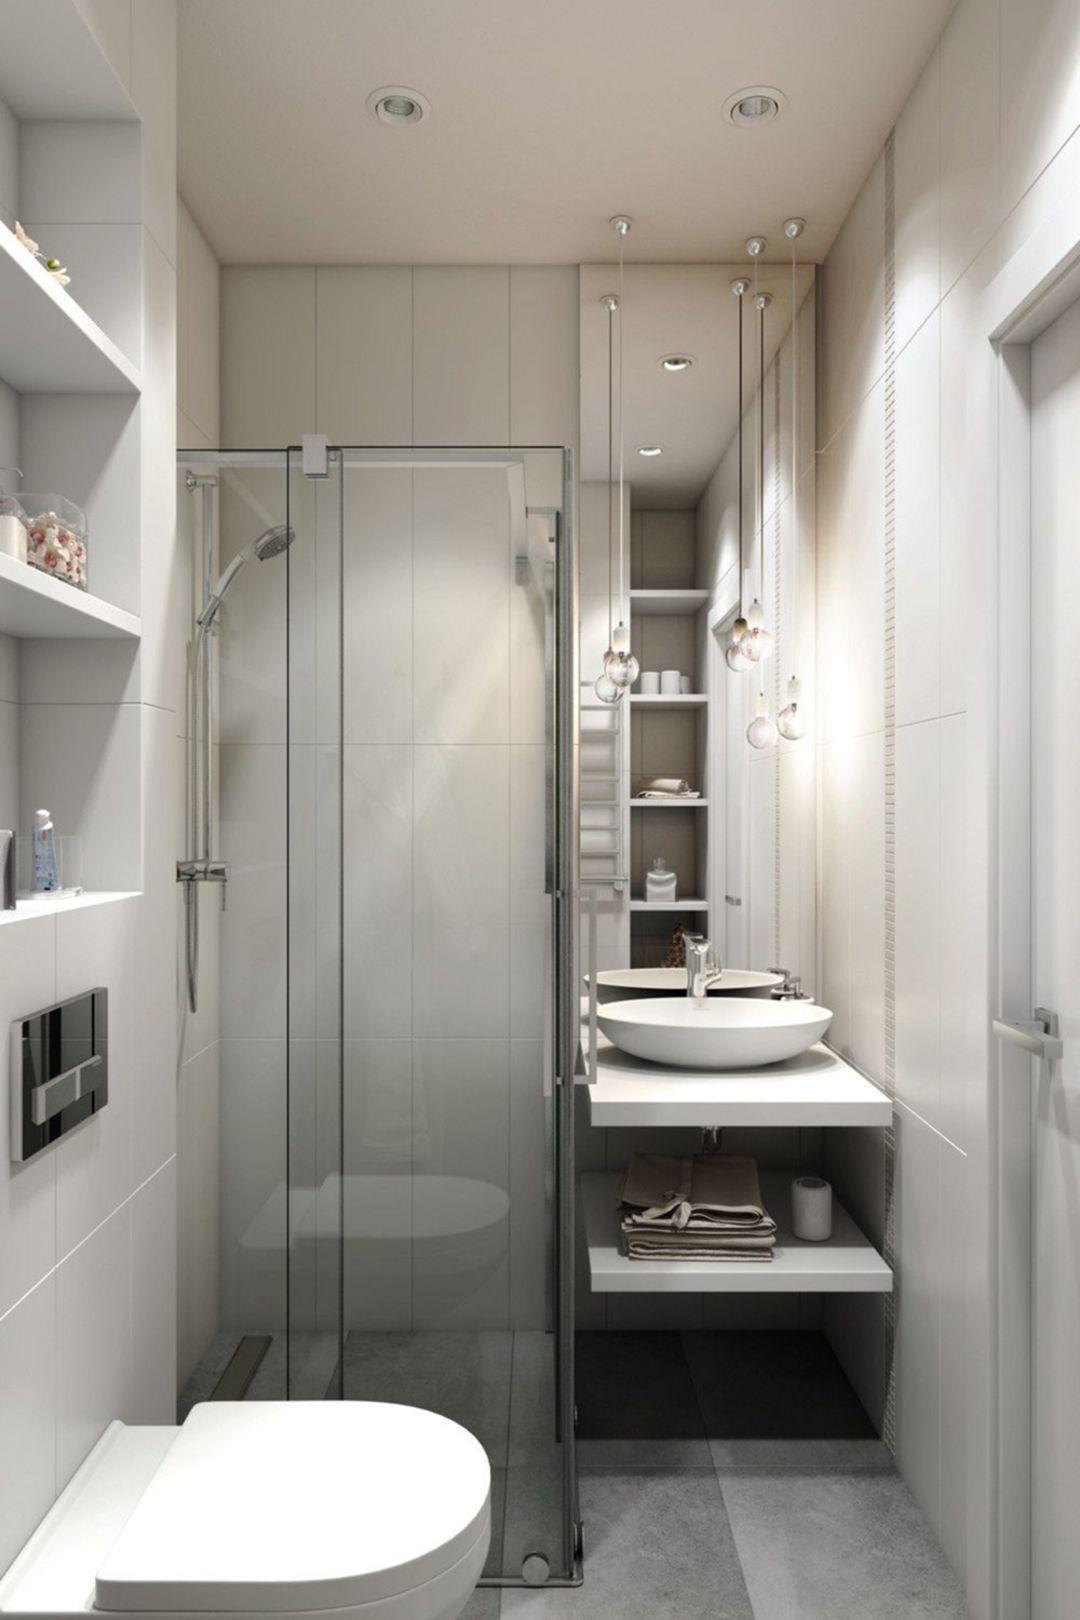 Bạn đang tìm kiếm ý tưởng cho việc thiết kế phòng tắm của mình? Hãy cùng xem qua những mẫu thiết kế phòng tắm của chúng tôi, với sự kết hợp tuyệt vời giữa kiến trúc và trang trí nội thất.